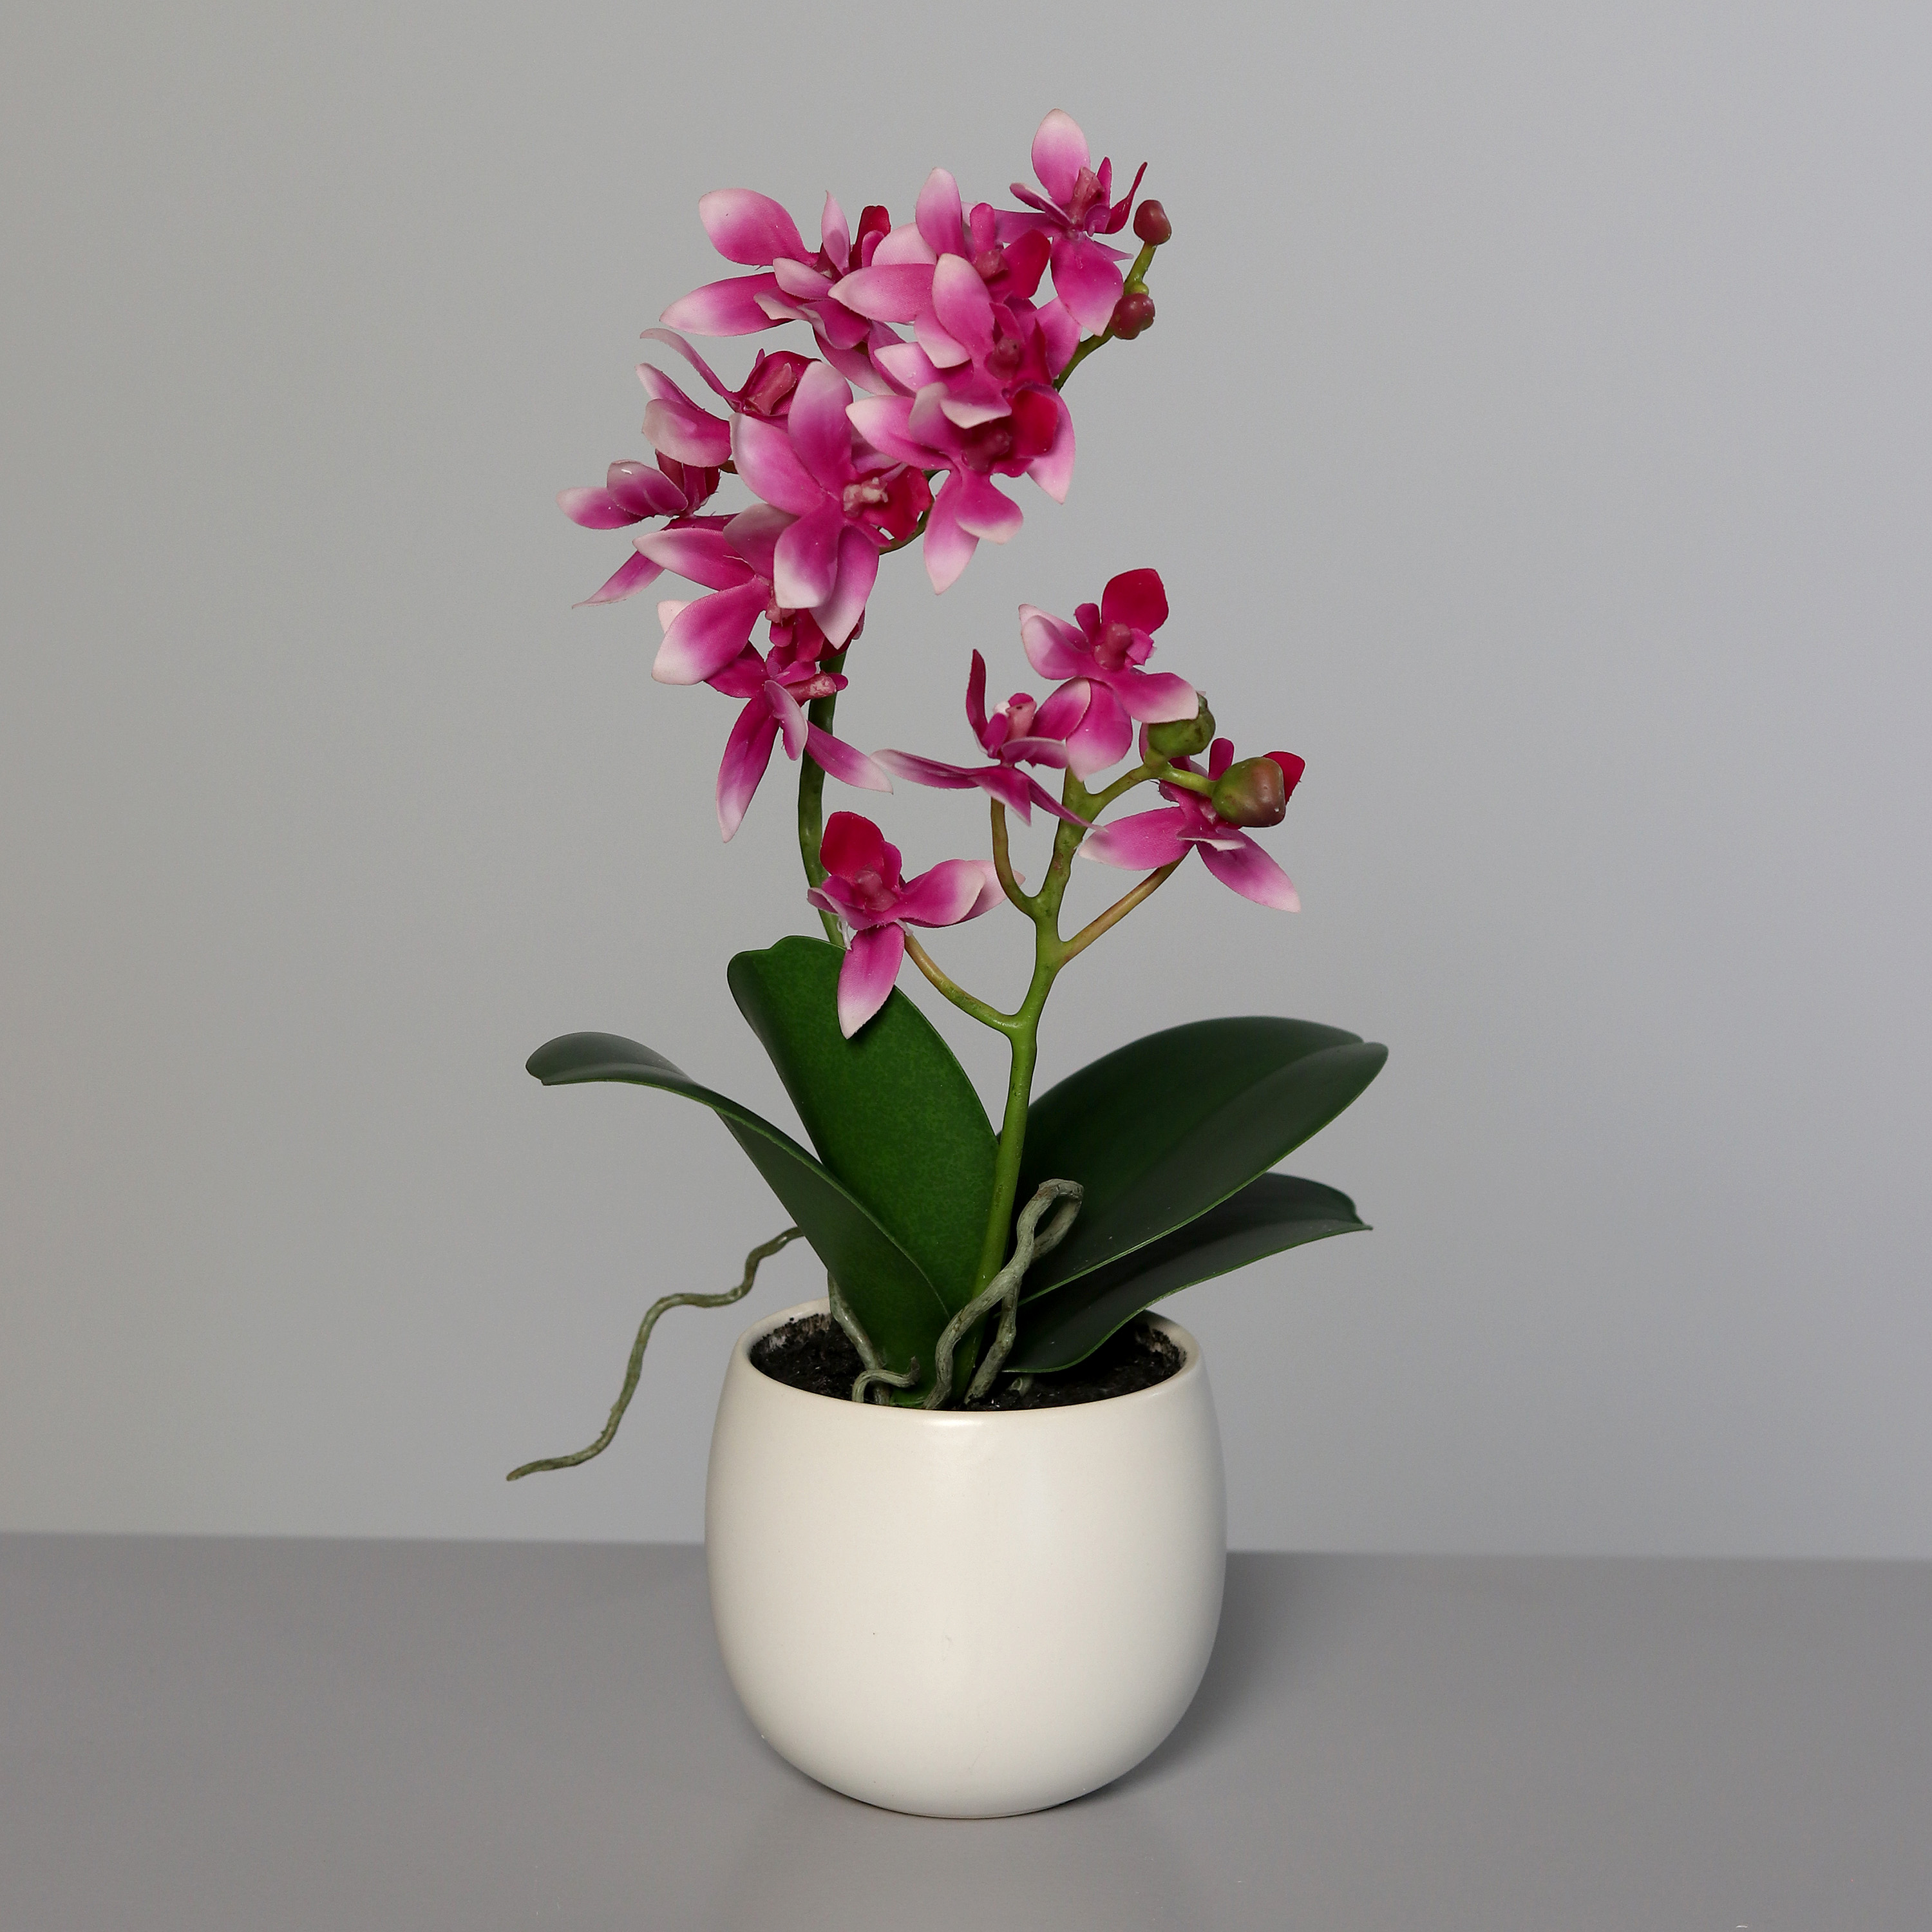 DPI GMBH - BRÜHL Orchidee rosee-white 34cm im Keramiktopf